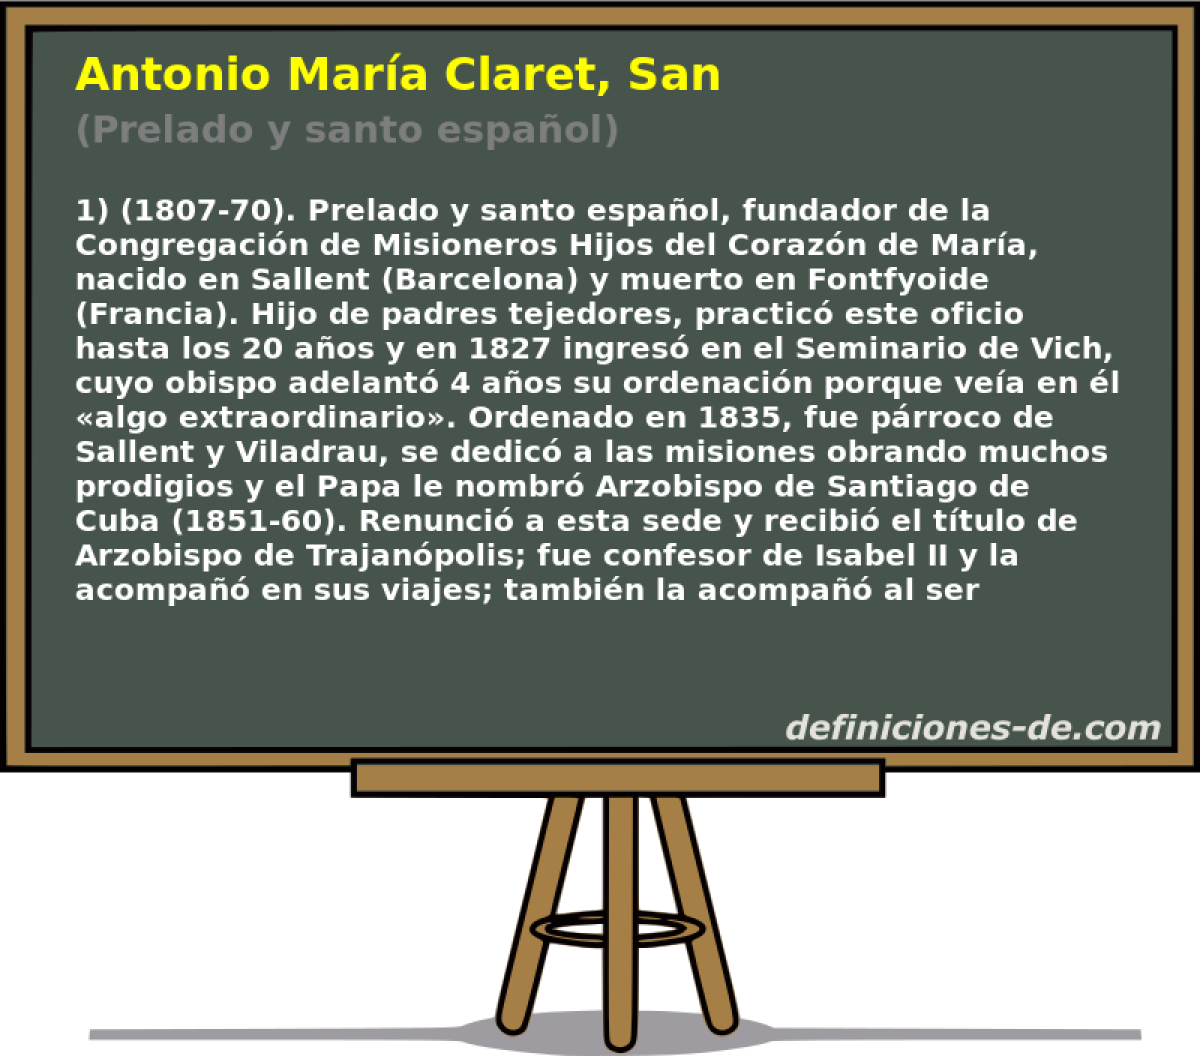 Antonio Mara Claret, San (Prelado y santo espaol)